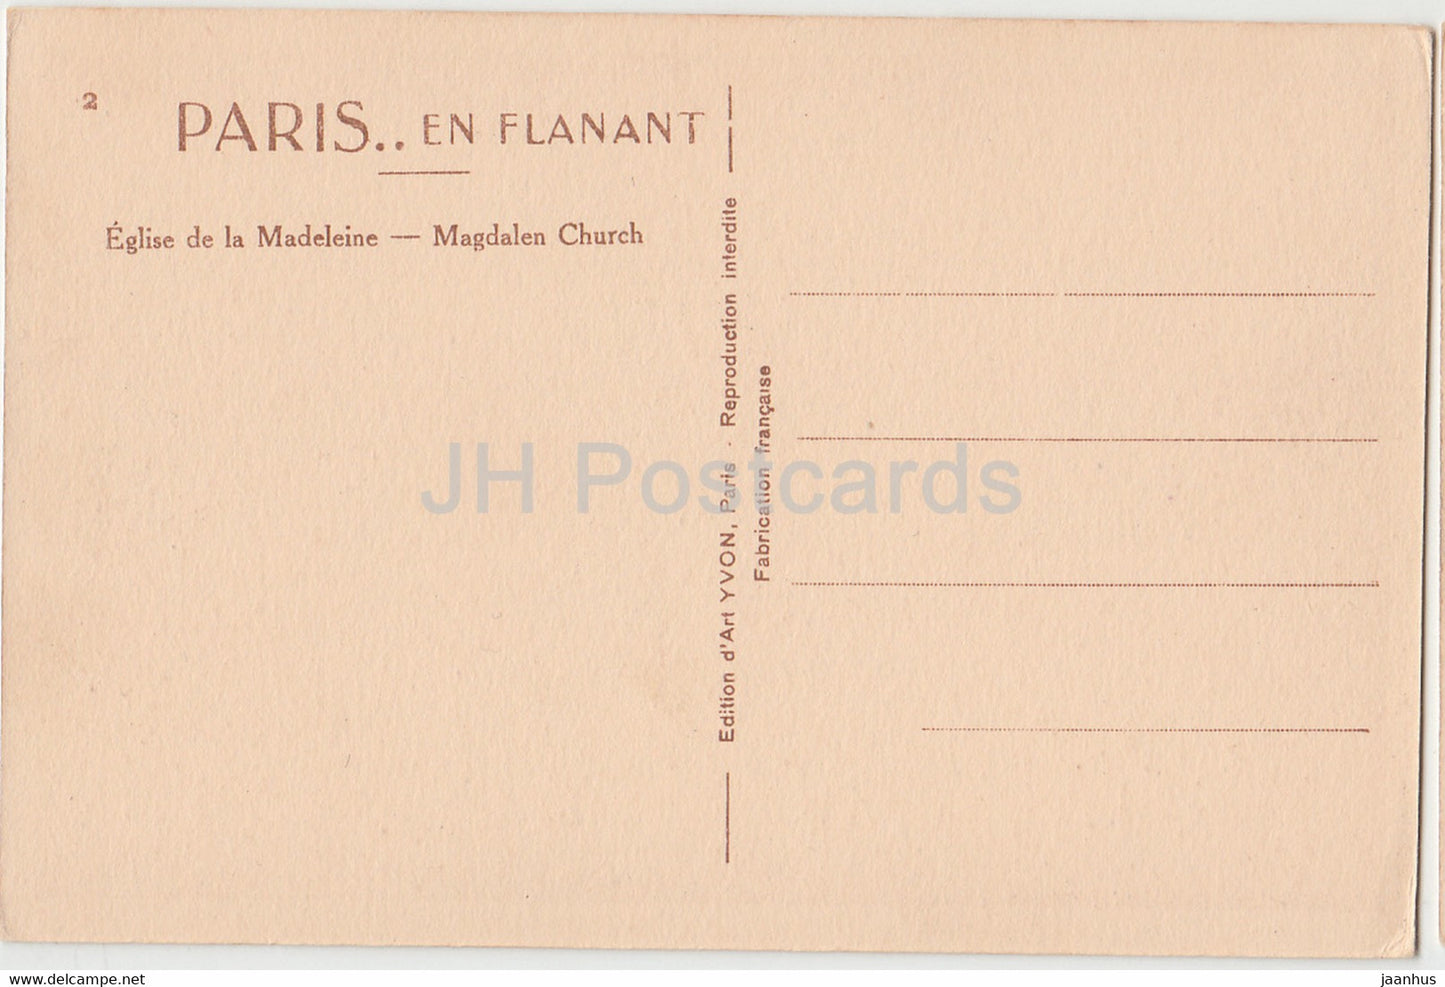 Paris - Eglise de la Madeleine - Magdalene Church - old car - old postcard - France - unused